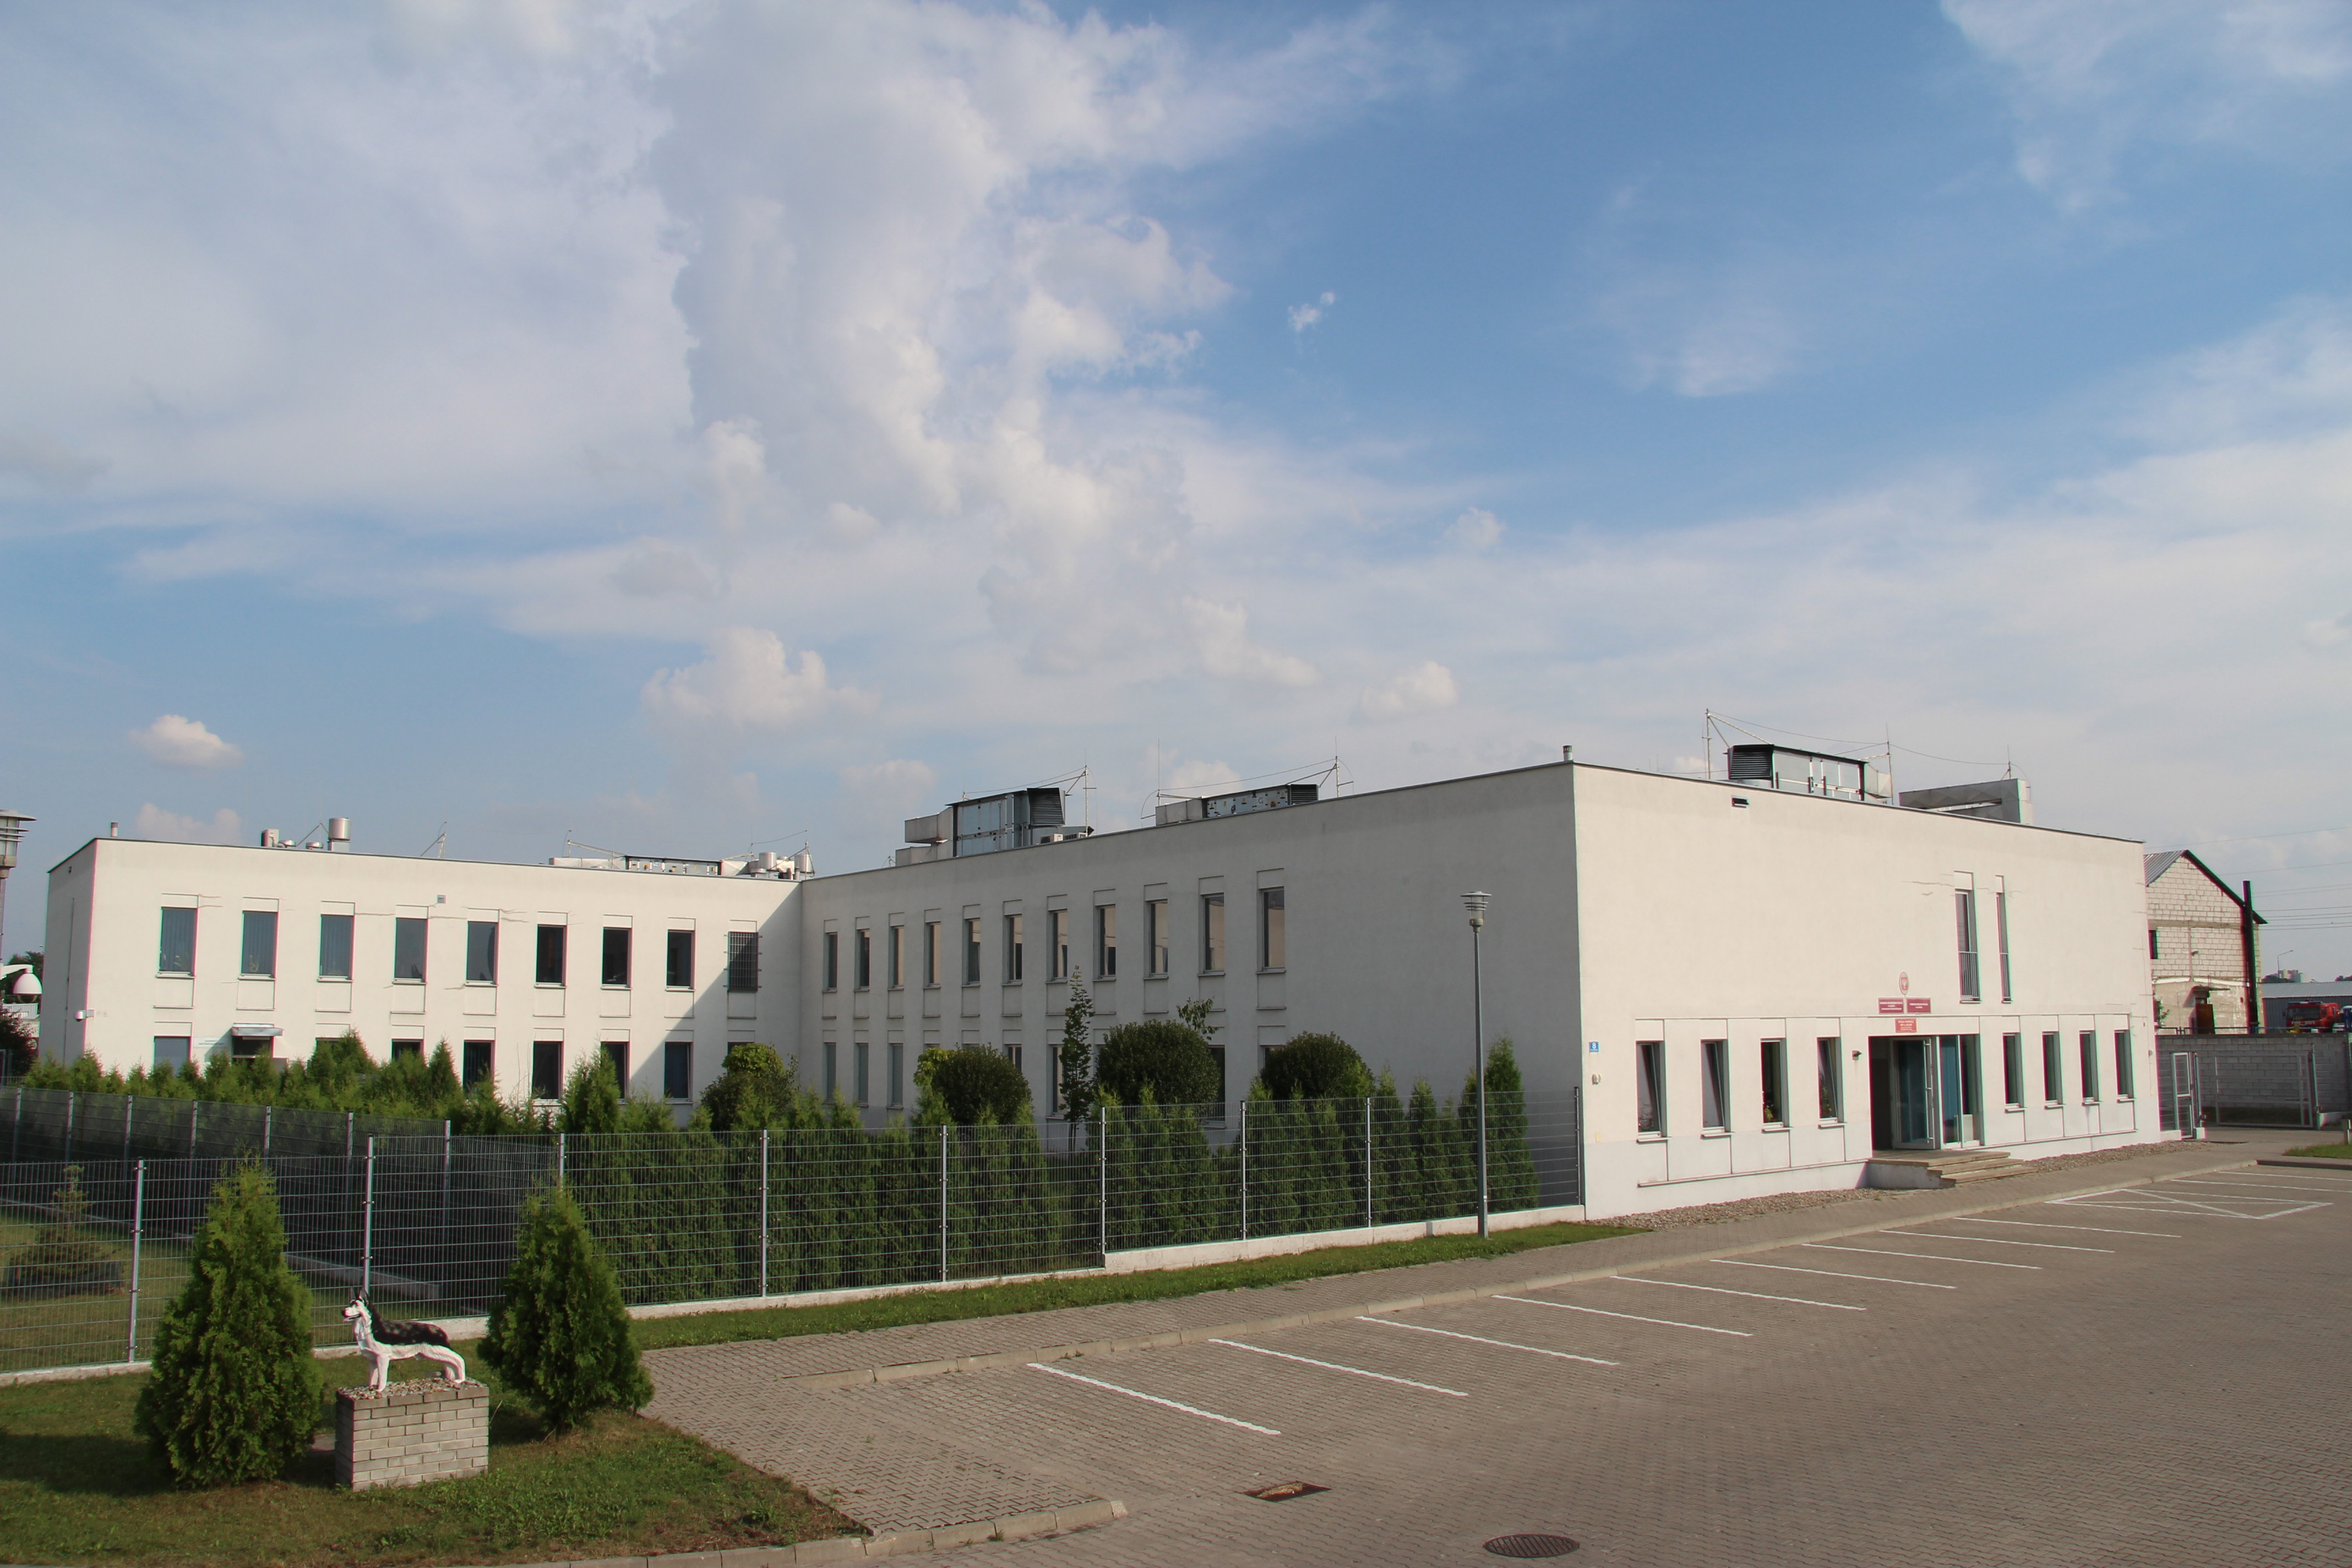 Budynek Laboratorium Kryminalistycznego (jednopiętrowy), zlkalizowany przy ul. Tyszowieckiej 8